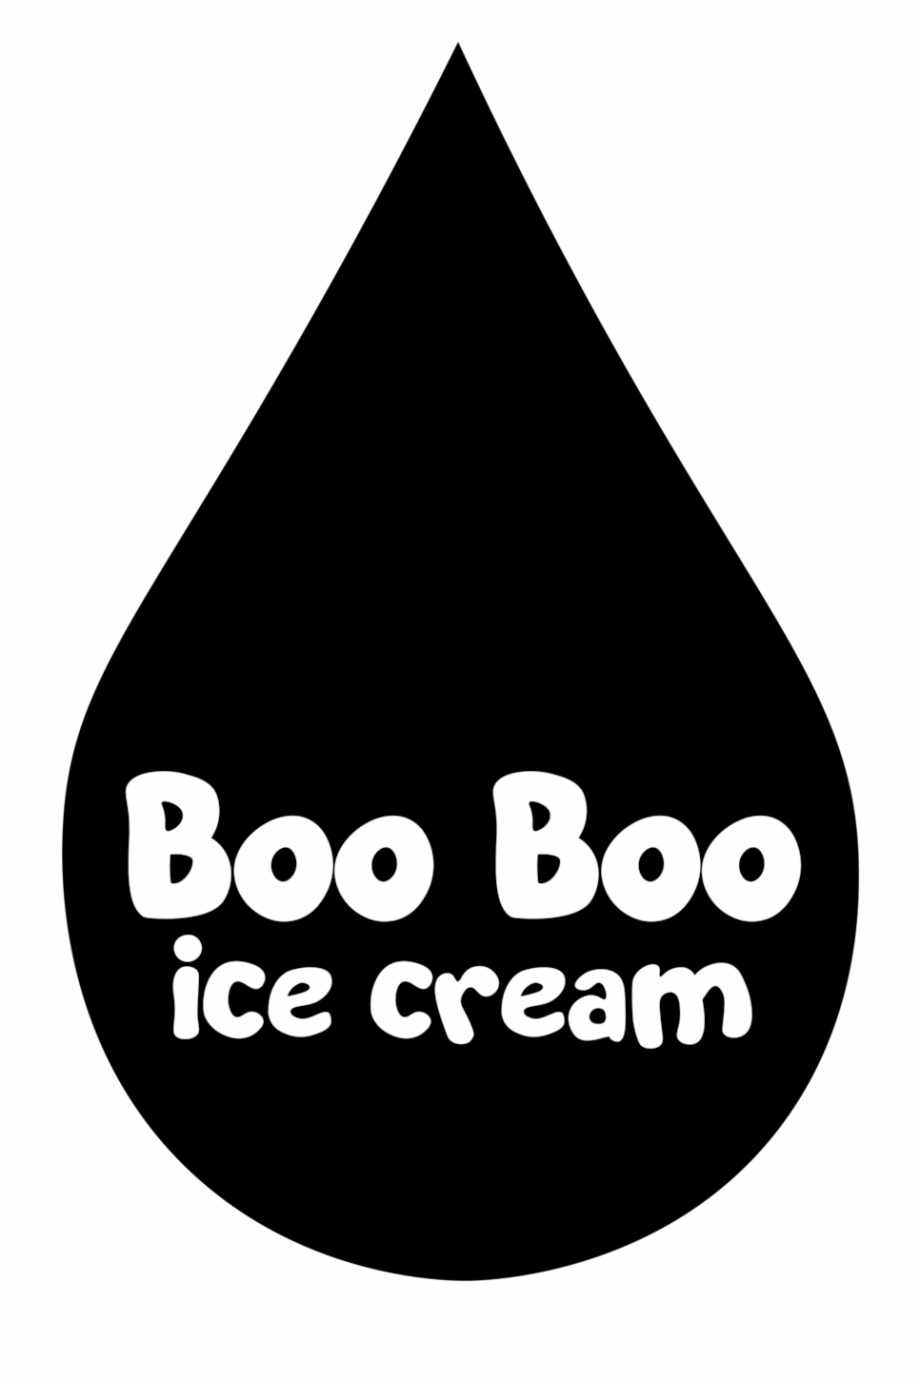 Boo Boo Ice Cream Logo 01 Graphic Design